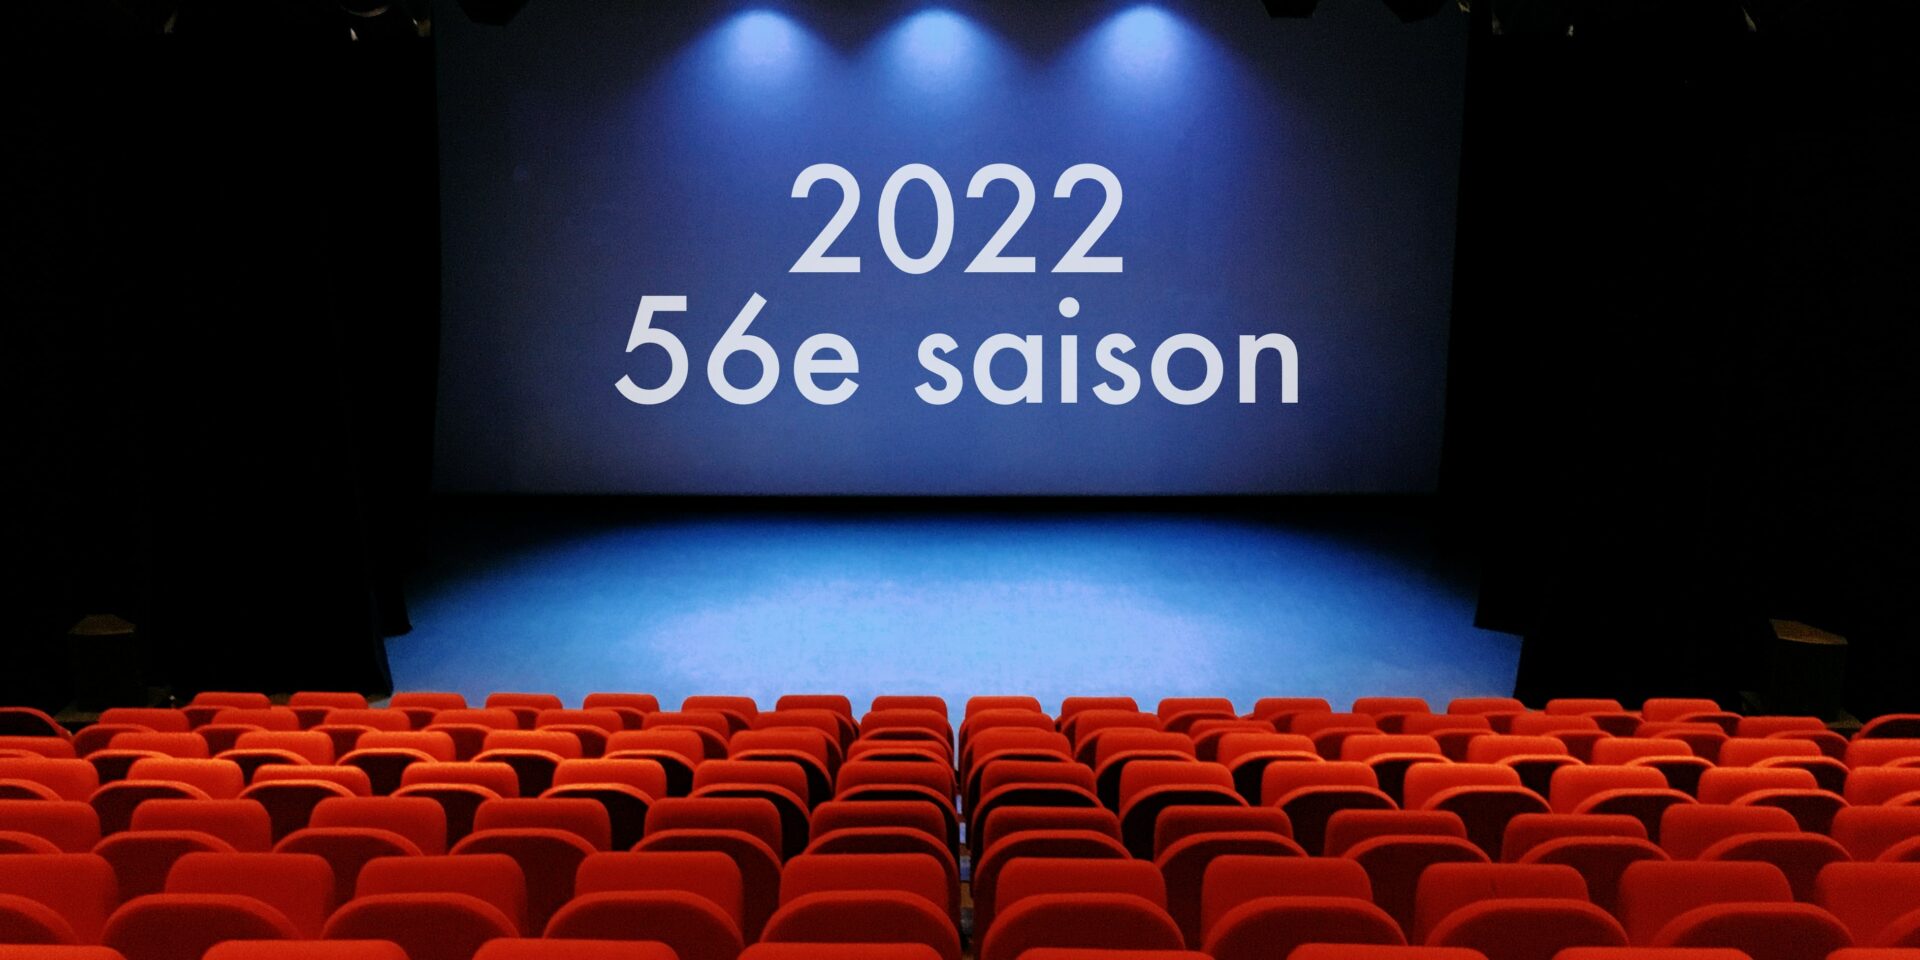 2022 – 56e saison